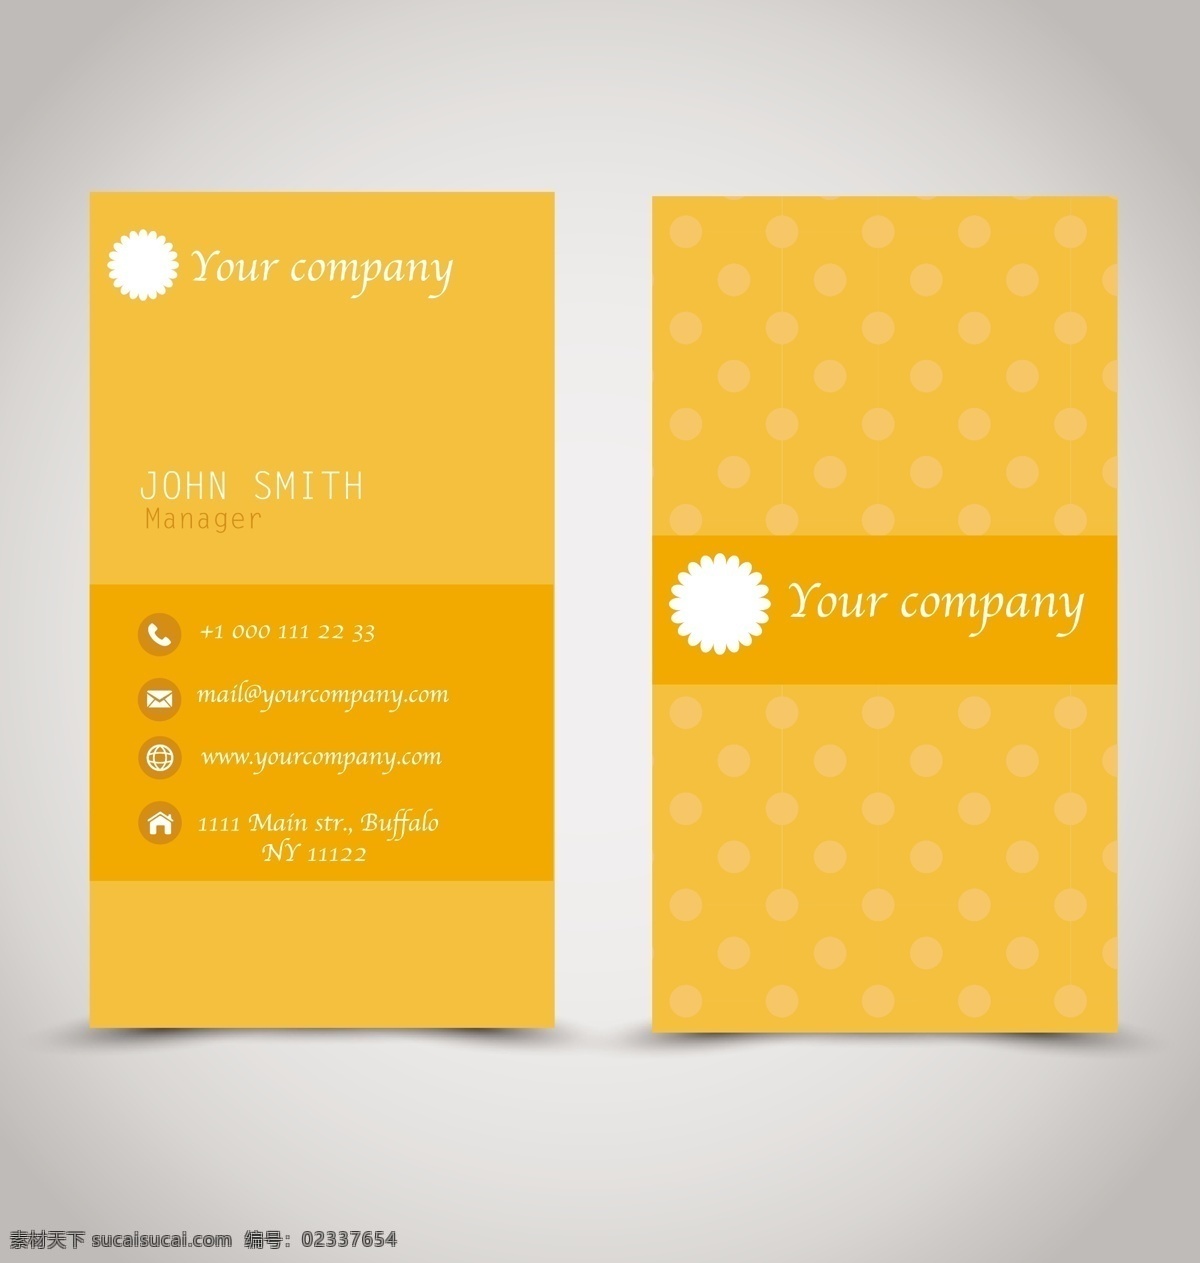 明亮 橘 色 创意 名片 矢量 模板 橘色 商务 卡片 矢量素材 设计素材